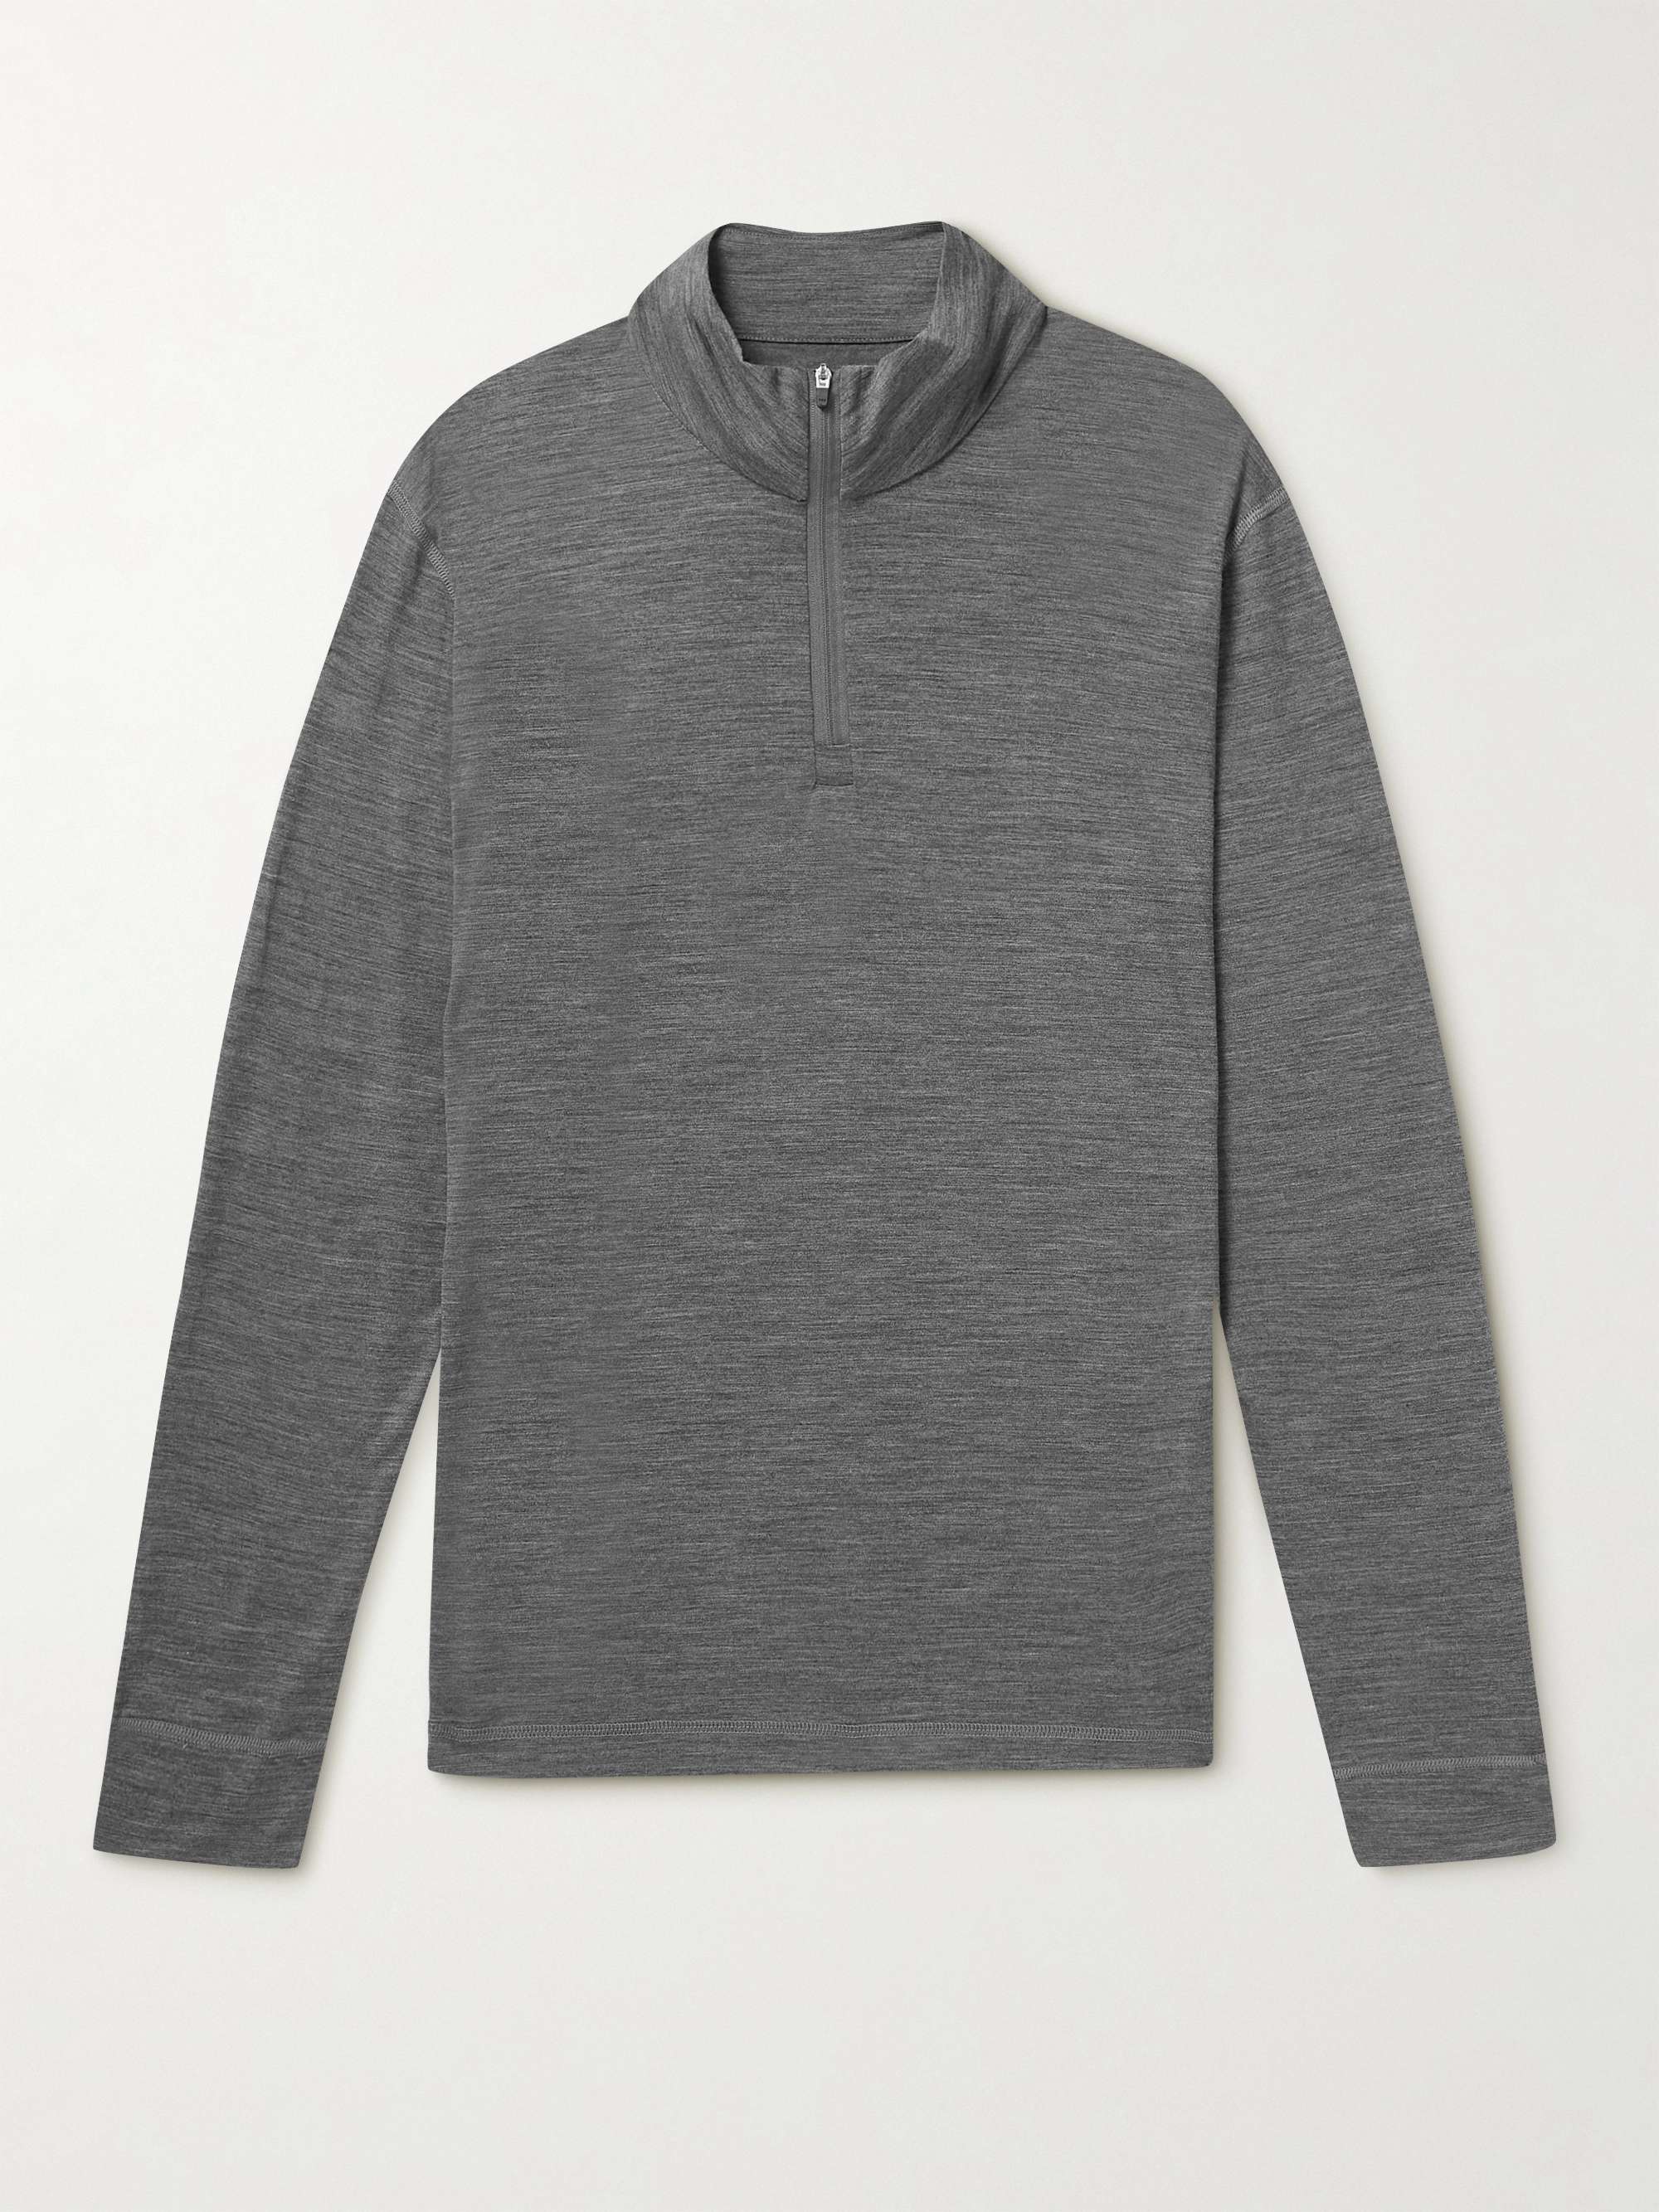 SUNSPEL Merino Wool Half-Zip Sweatshirt | MR PORTER